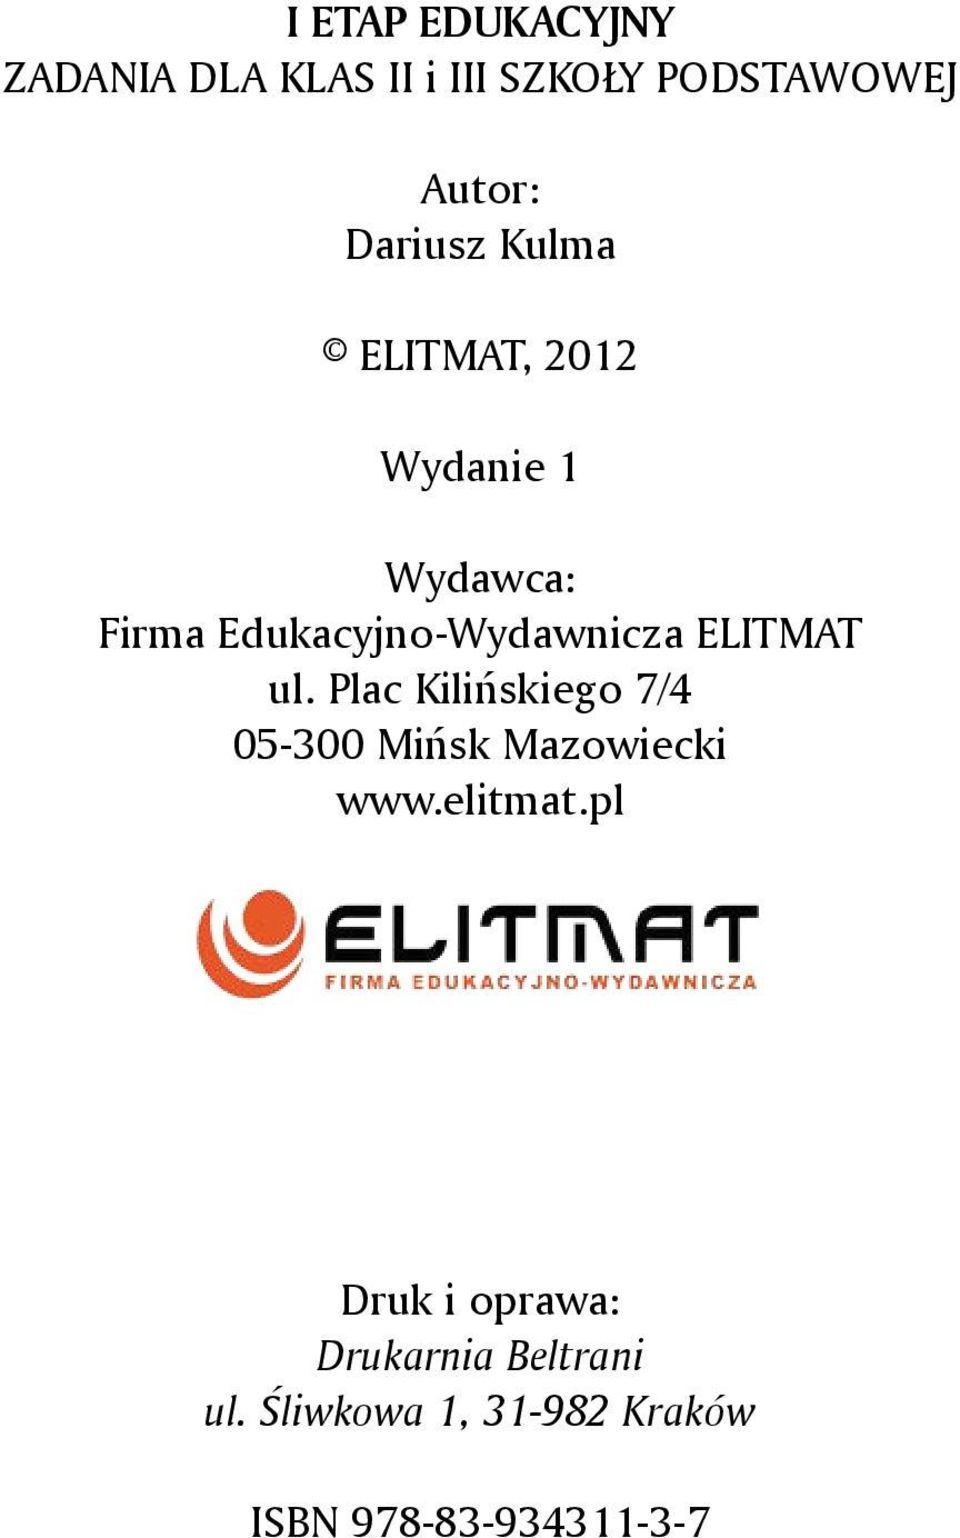 ELITMAT ul. Plac Kilińskiego 7/4 05-300 Mińsk Mazowiecki www.elitmat.